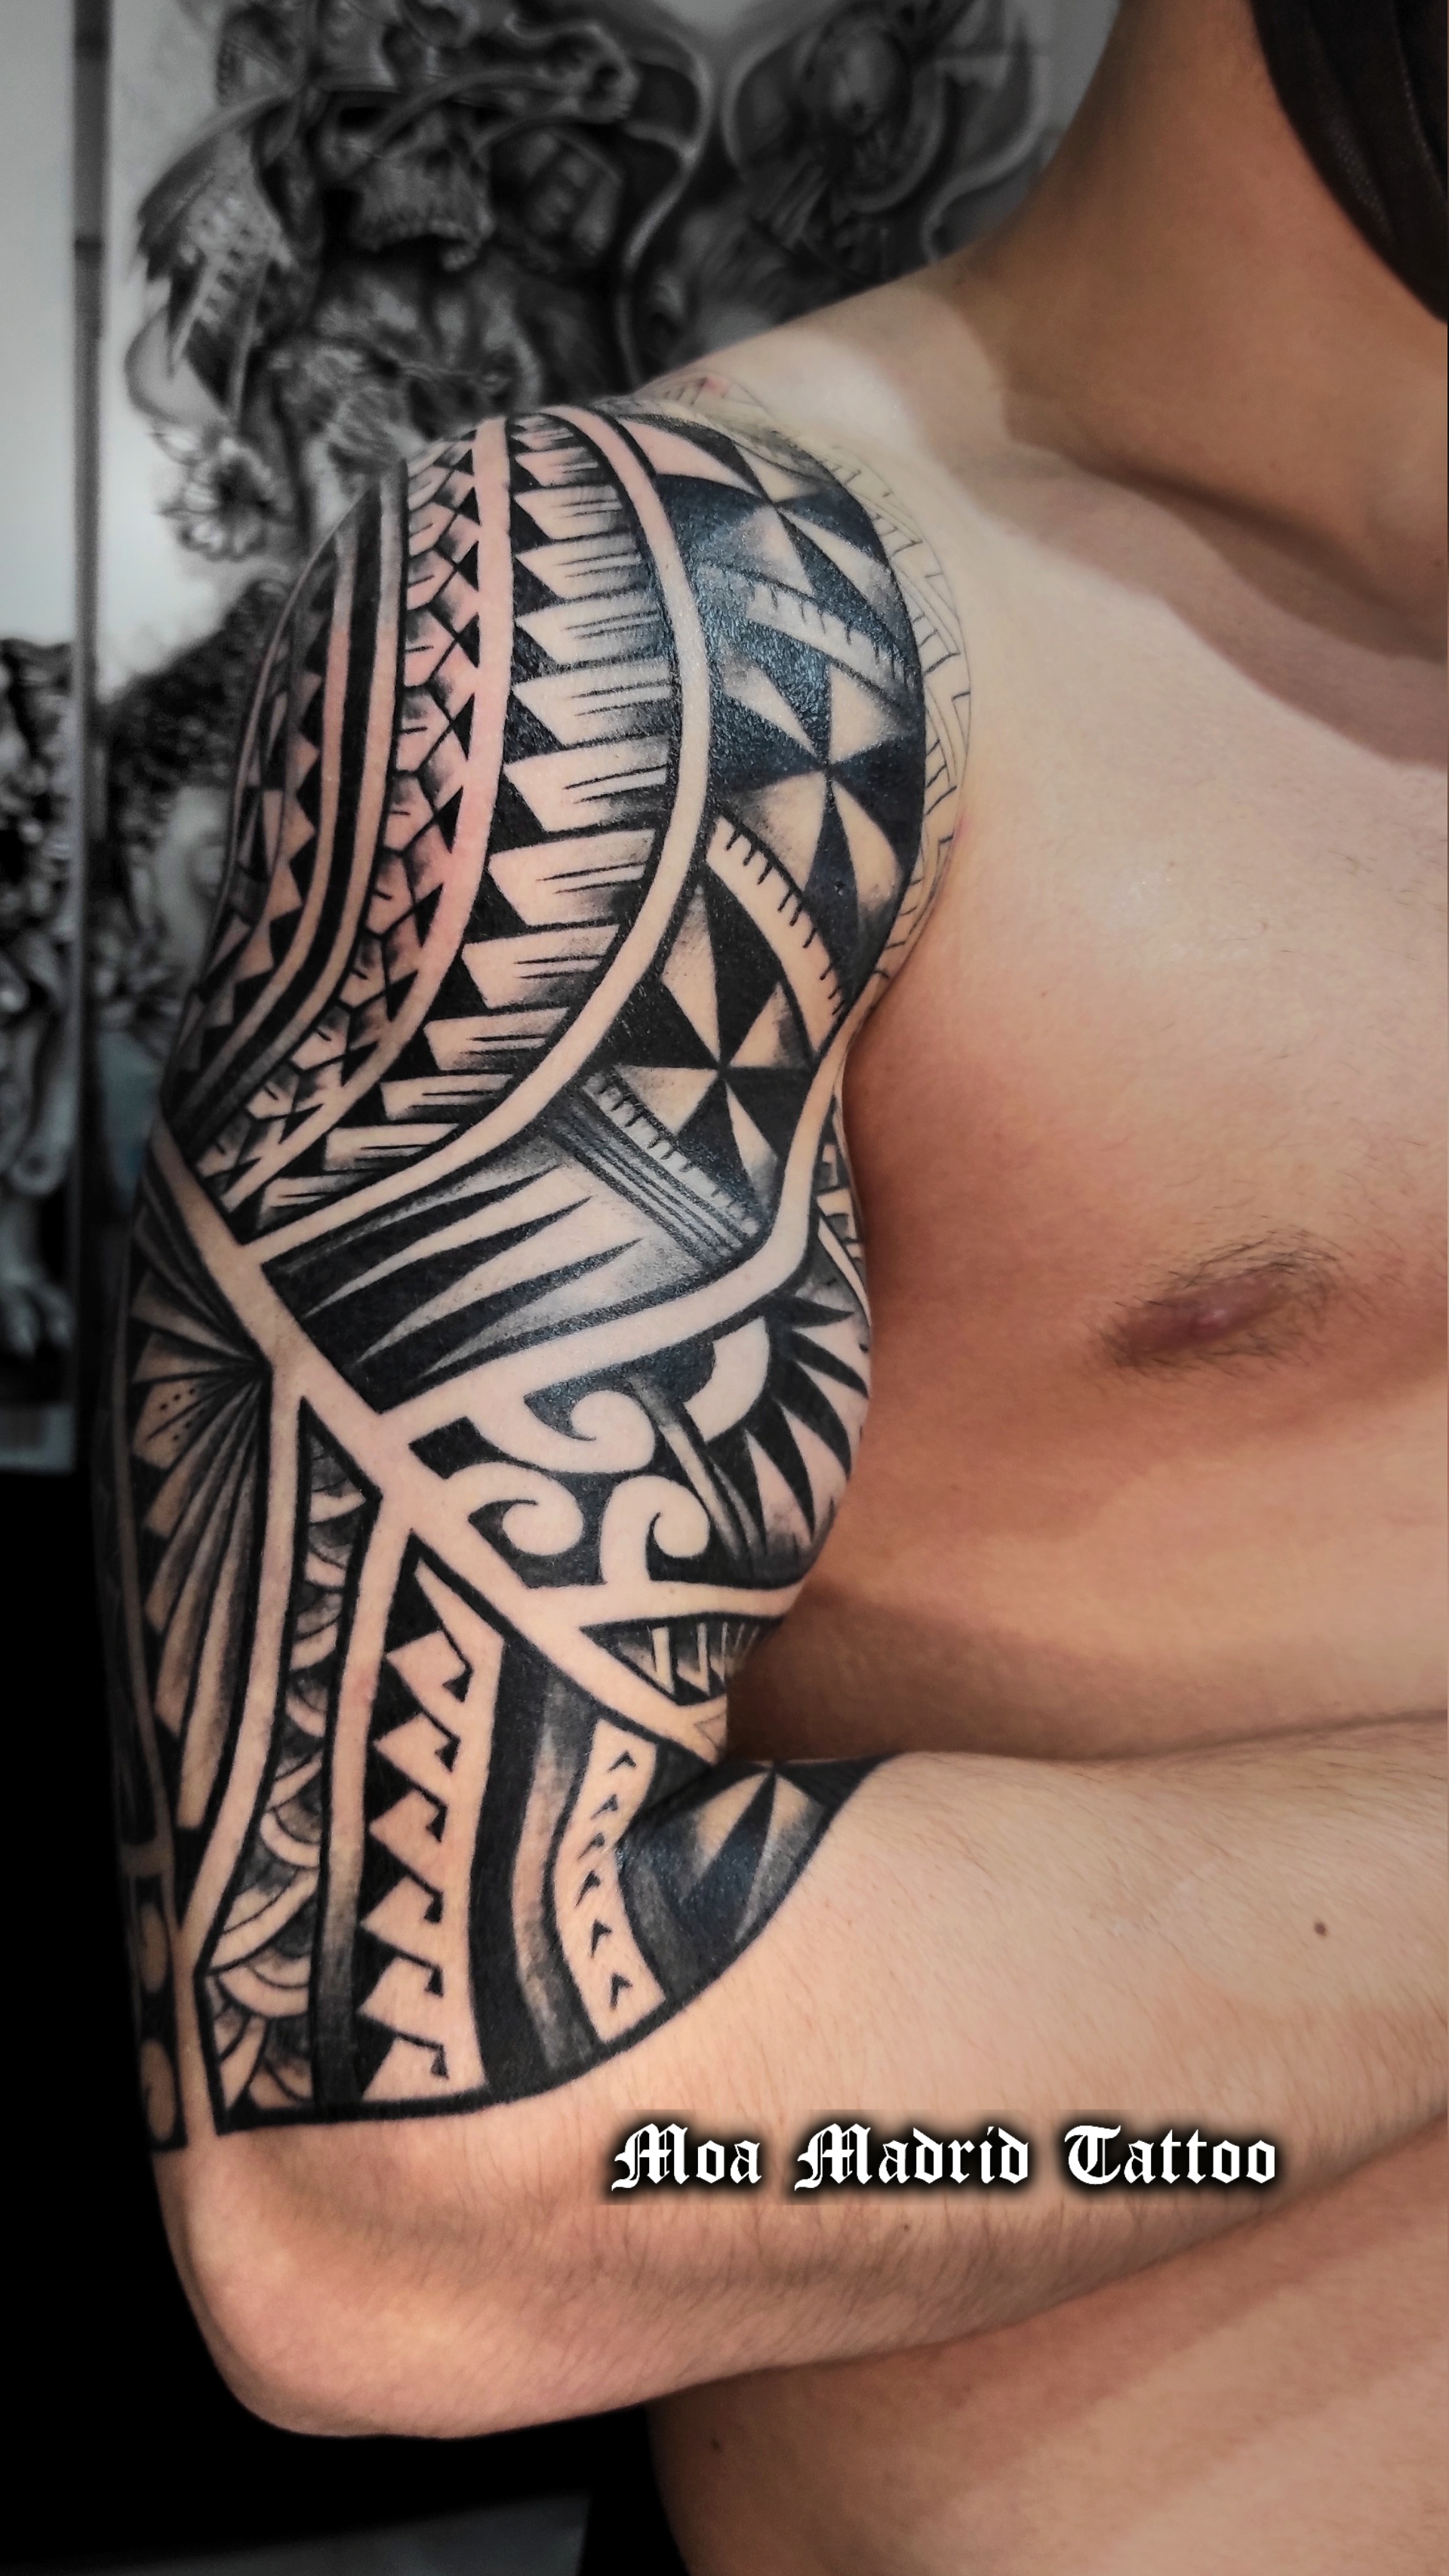 El diseño del tattoo samoano sigue las formas de los músculos del brazo